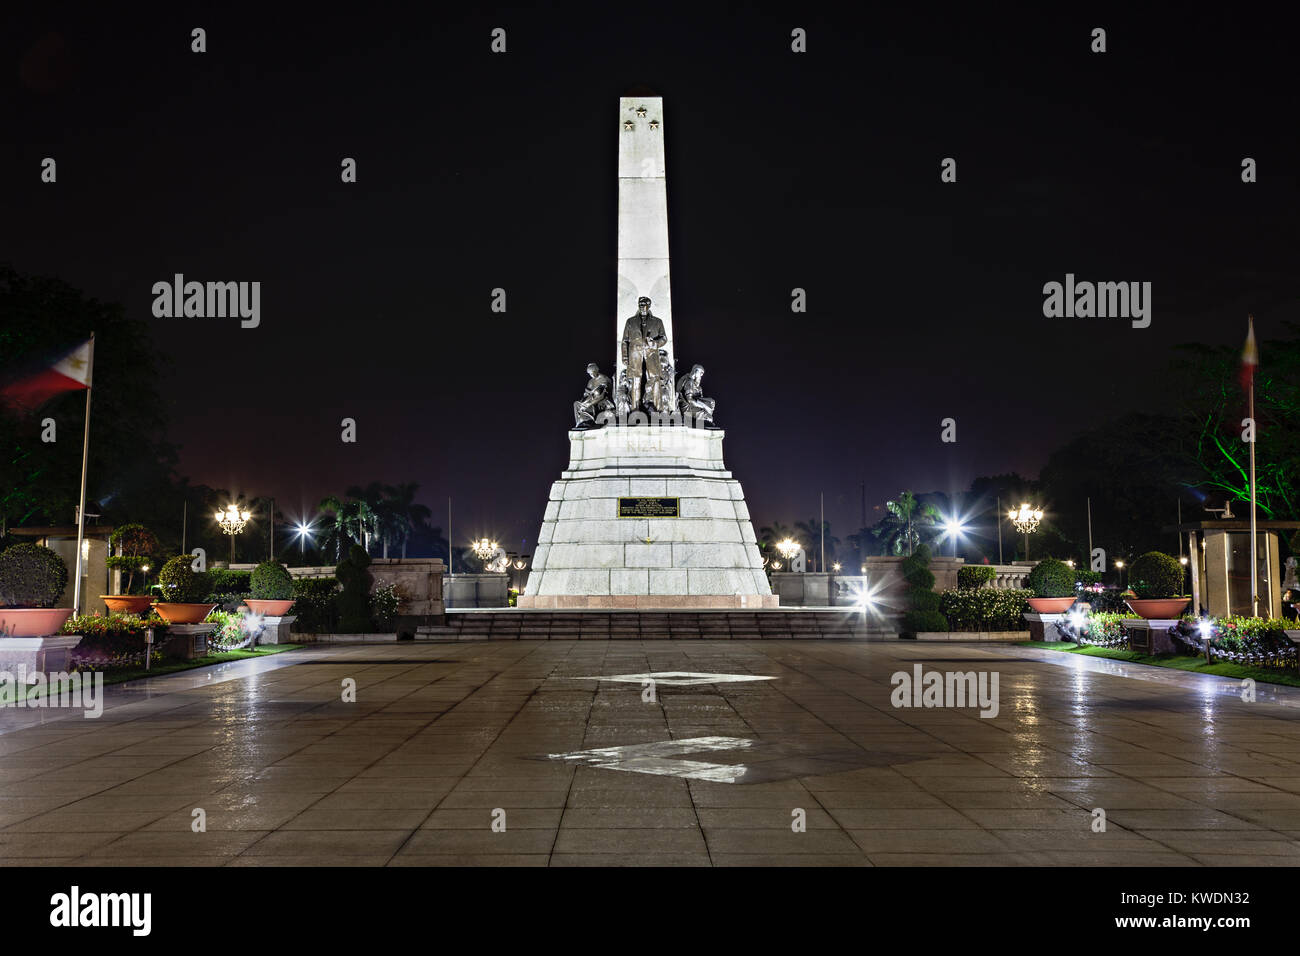 Monument de Jose Rizal - nationaliste philippin, écrivain et révolutionnaire Banque D'Images